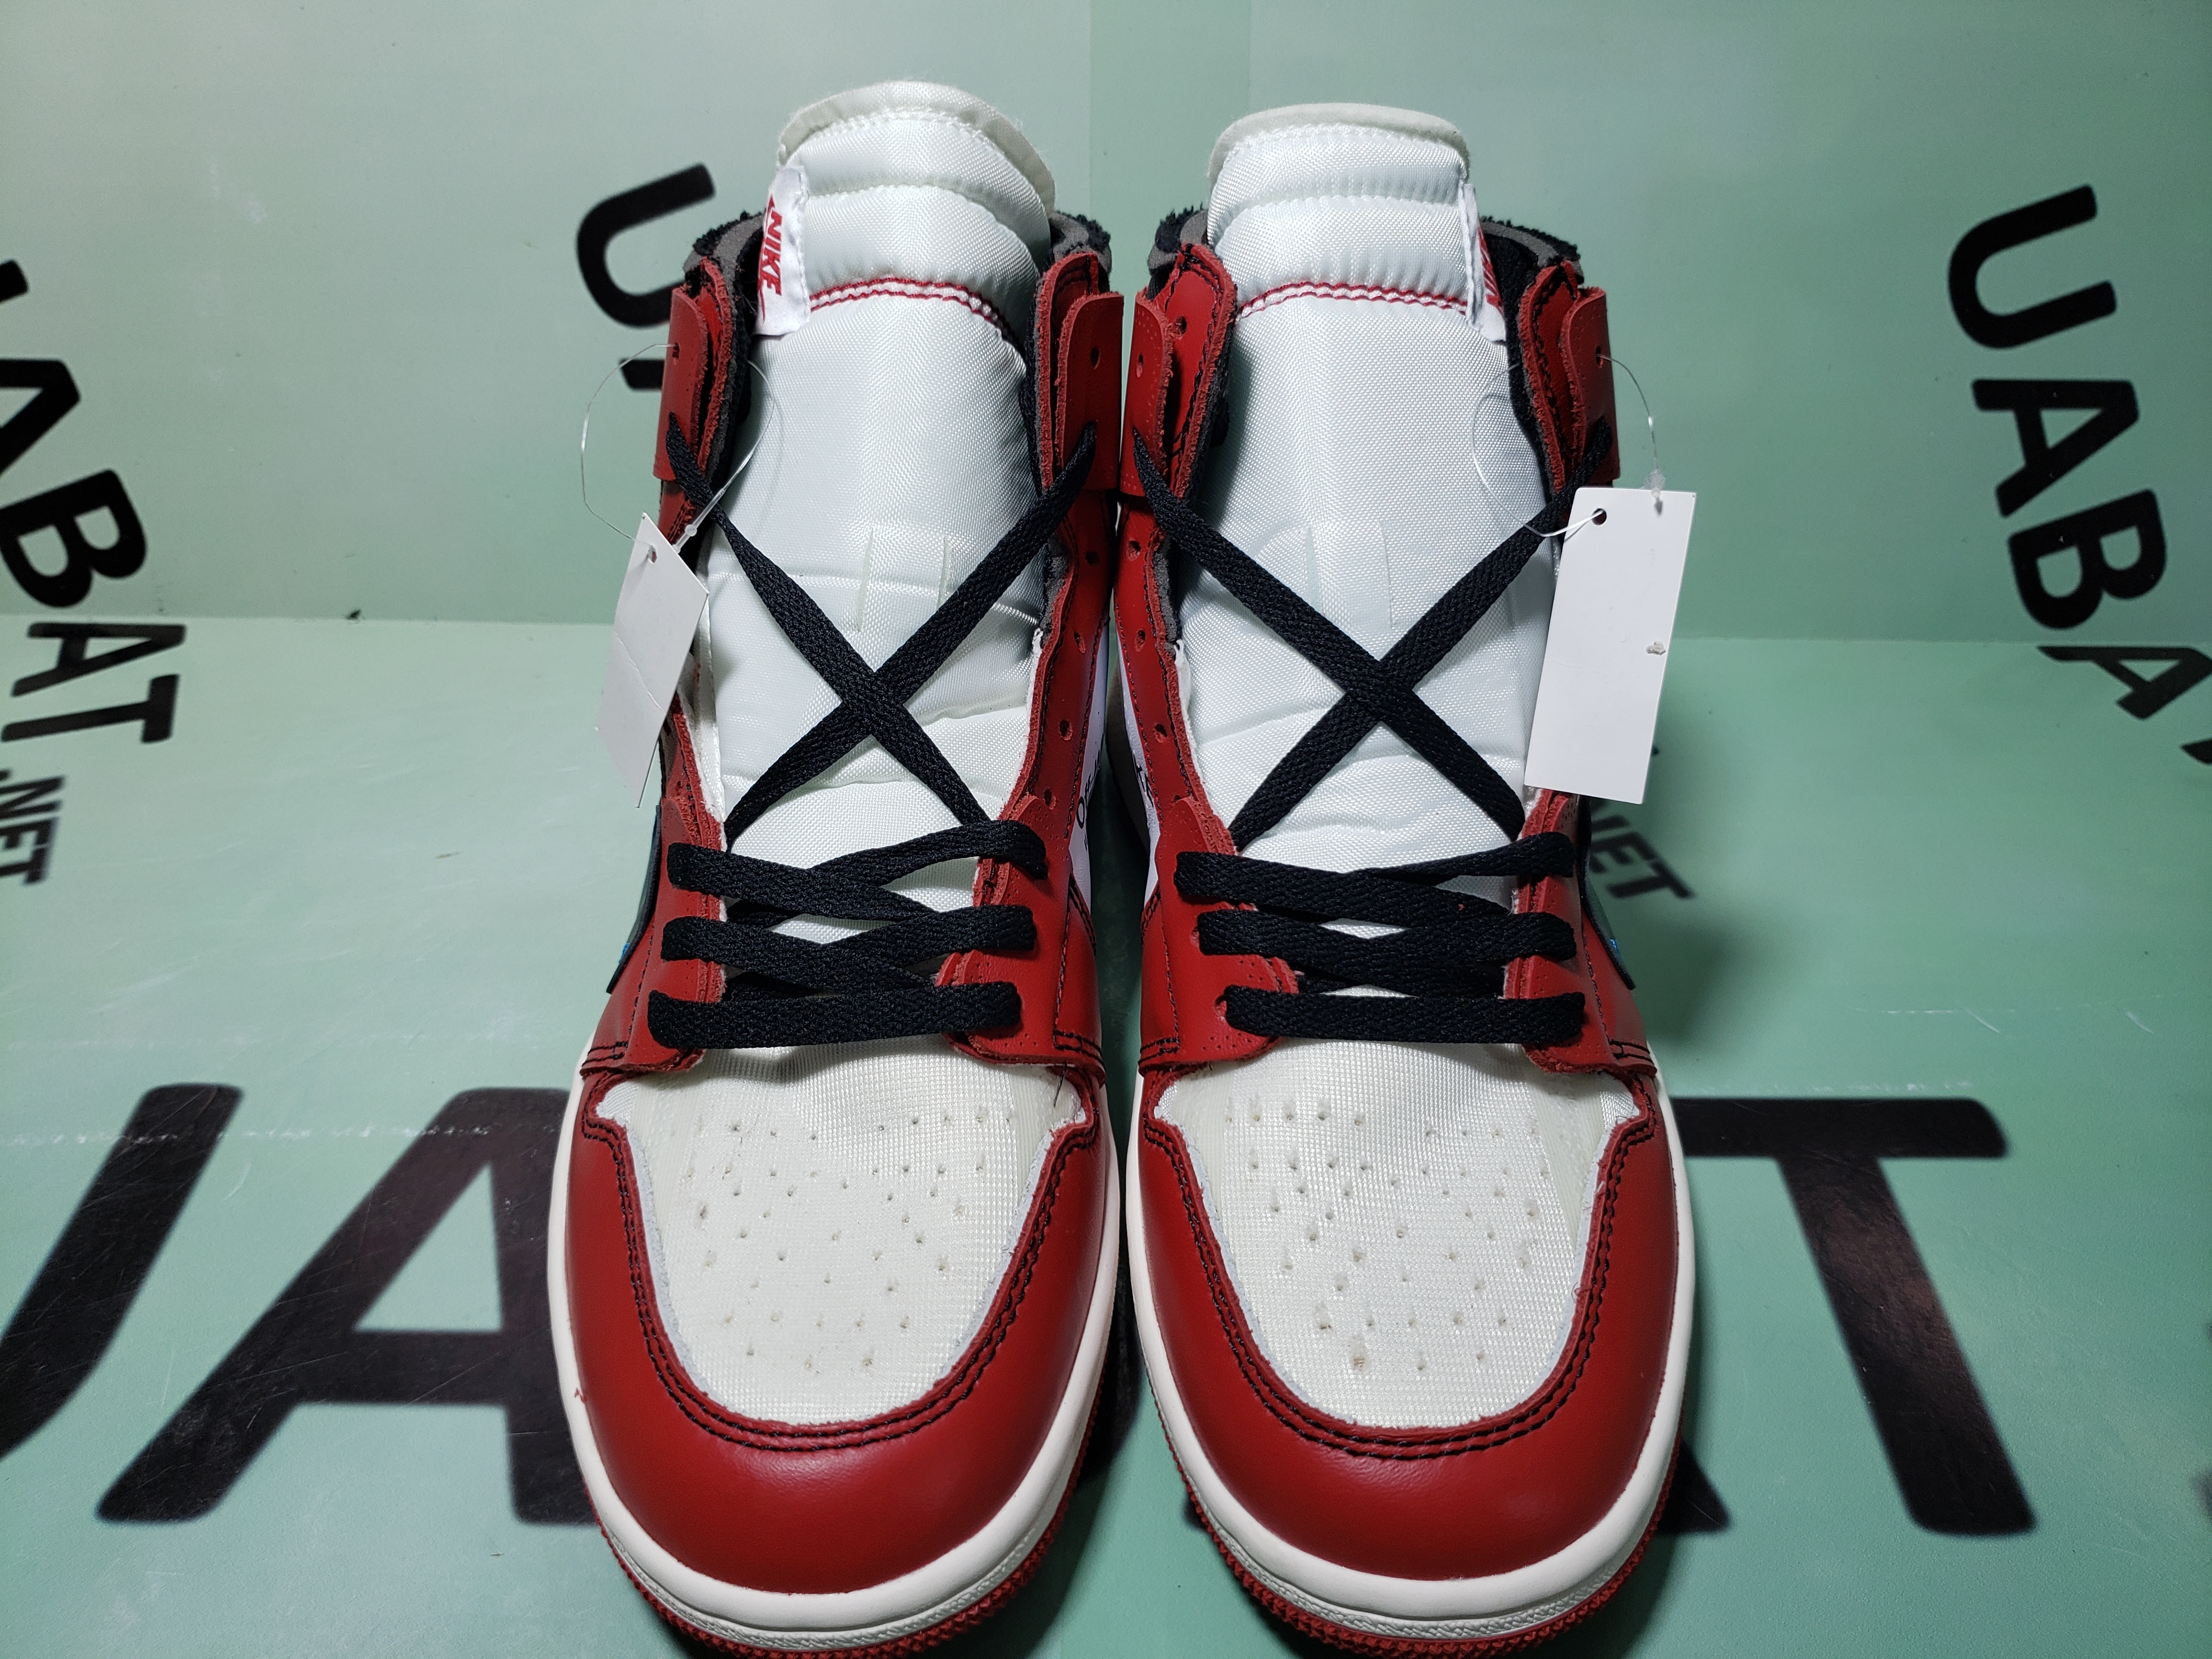 Buy Off-White x Air Jordan 1 Retro High OG 'Chicago' - AA3834 101